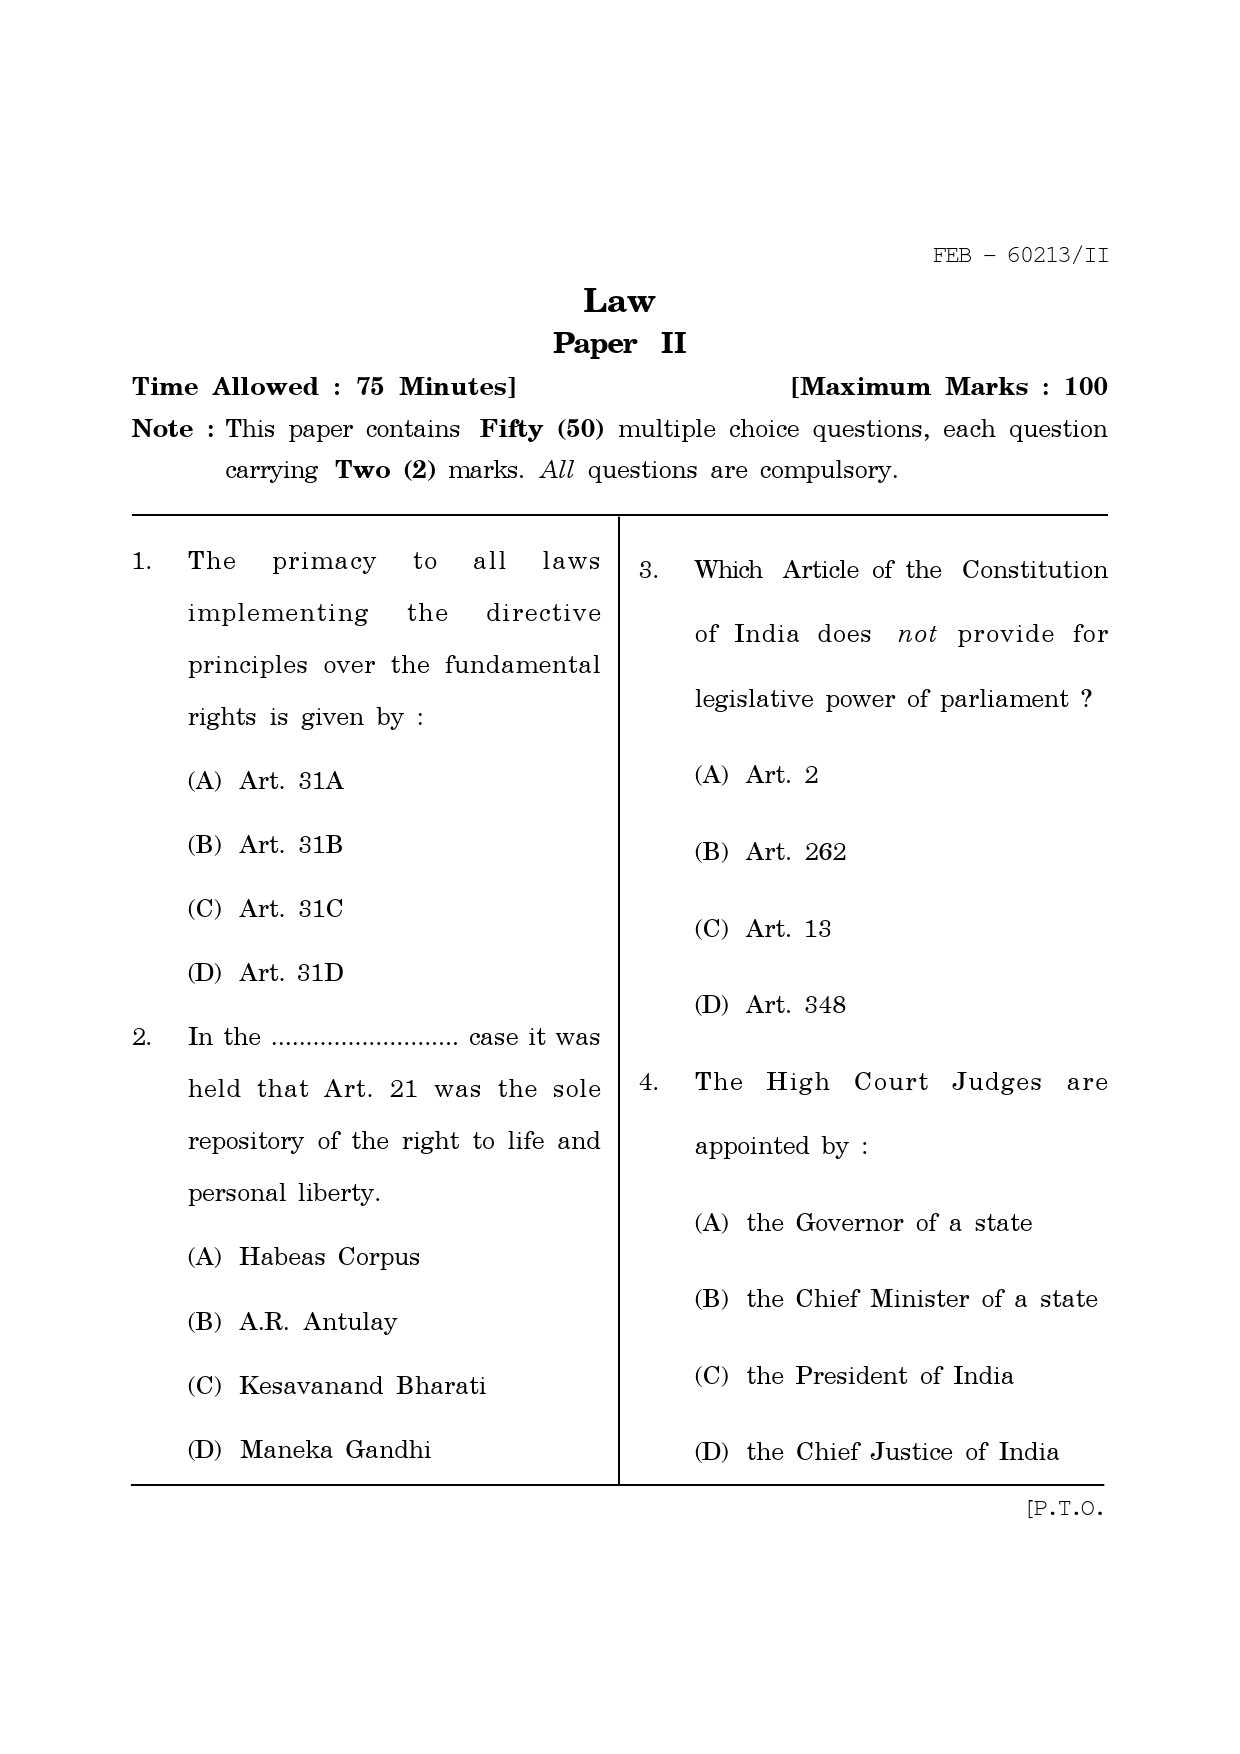 Maharashtra SET Law Question Paper II February 2013 1